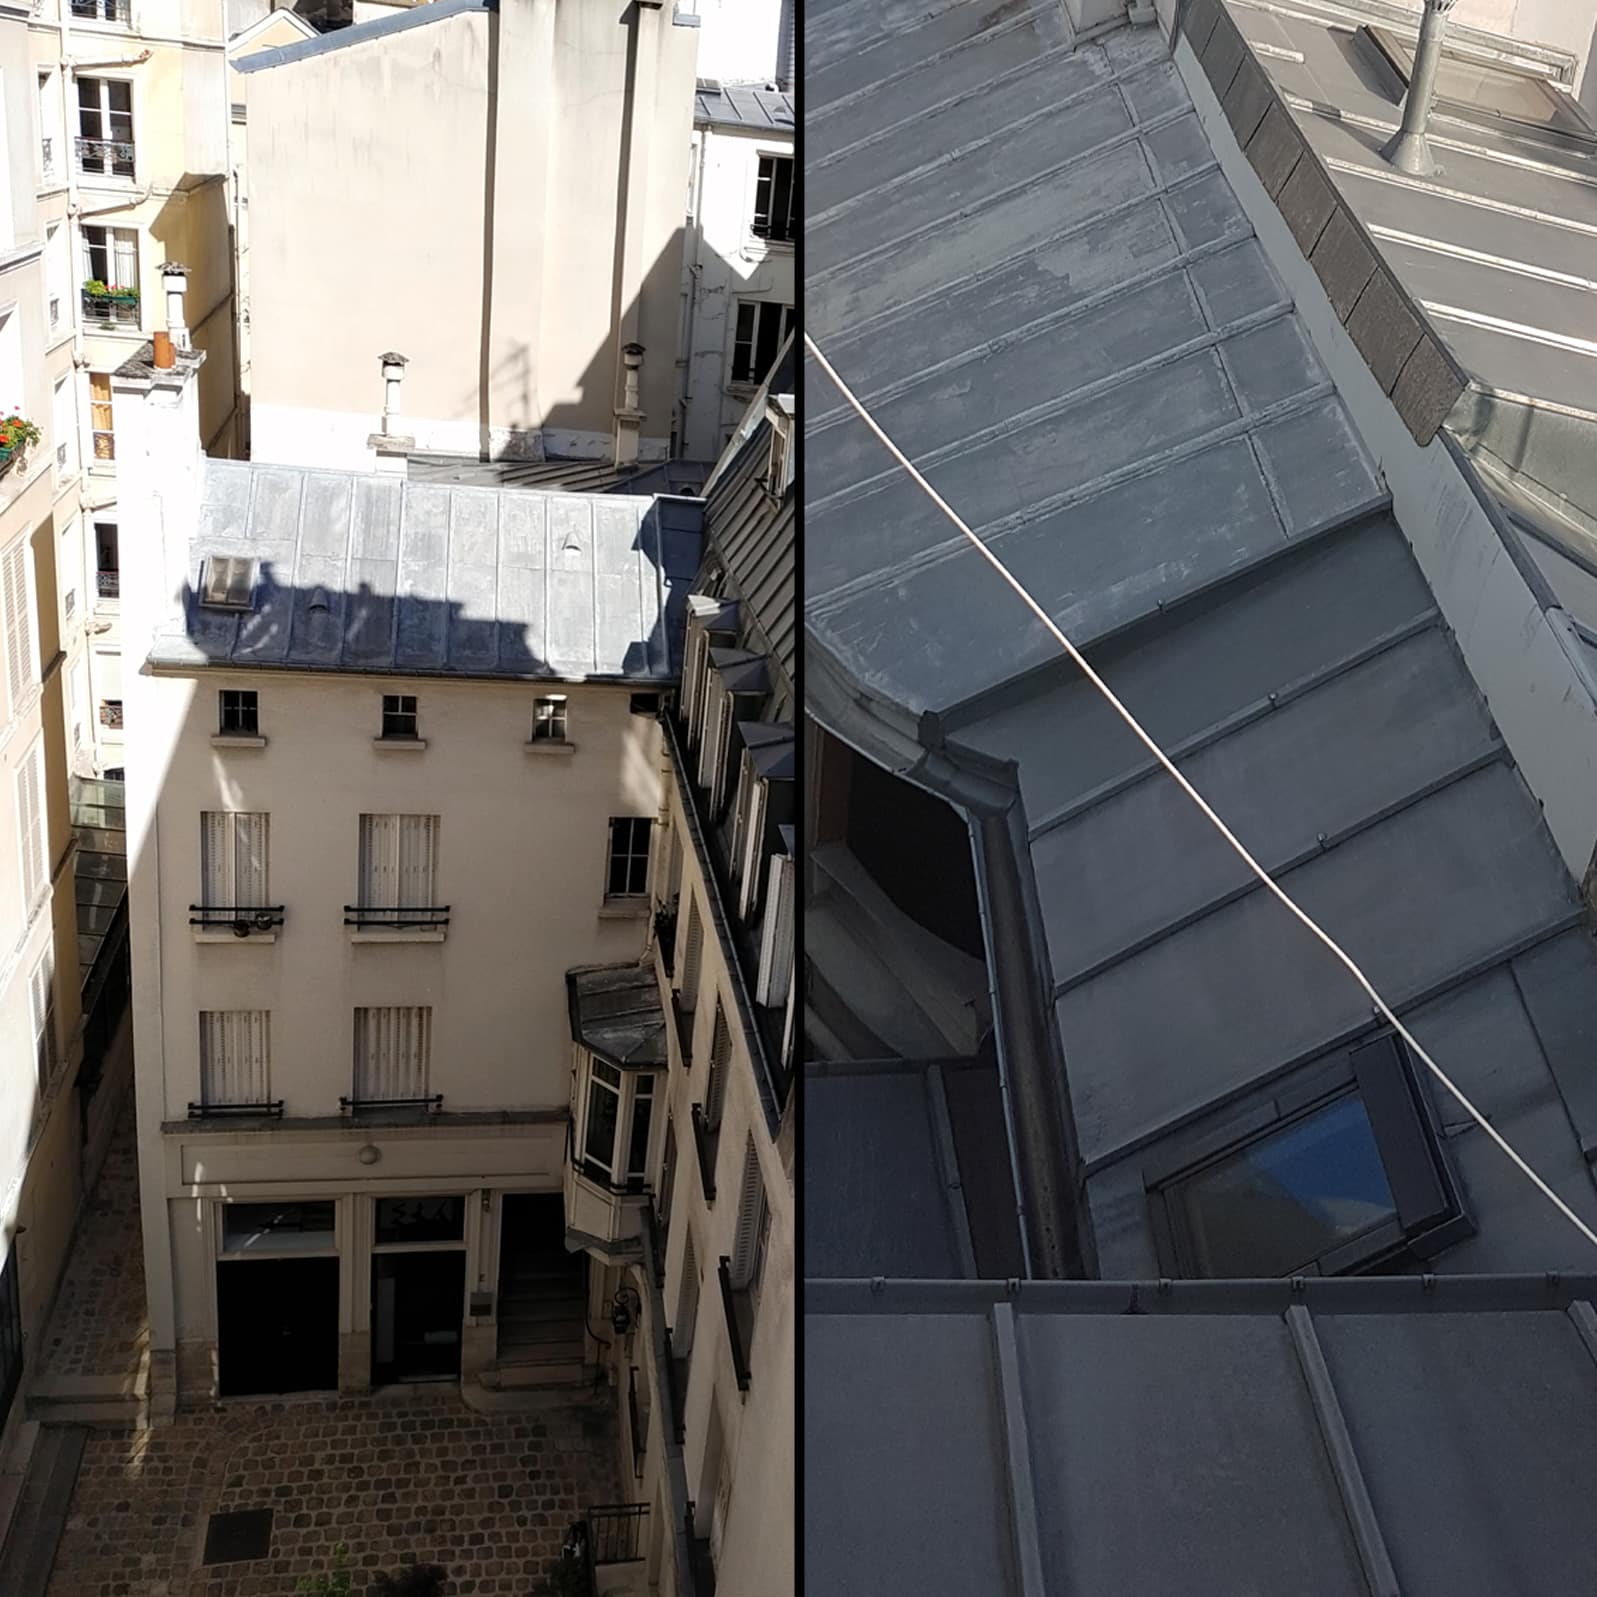 Projet de rénovation de 2 immeubles de logement – Paris 1ème [étude en cours]